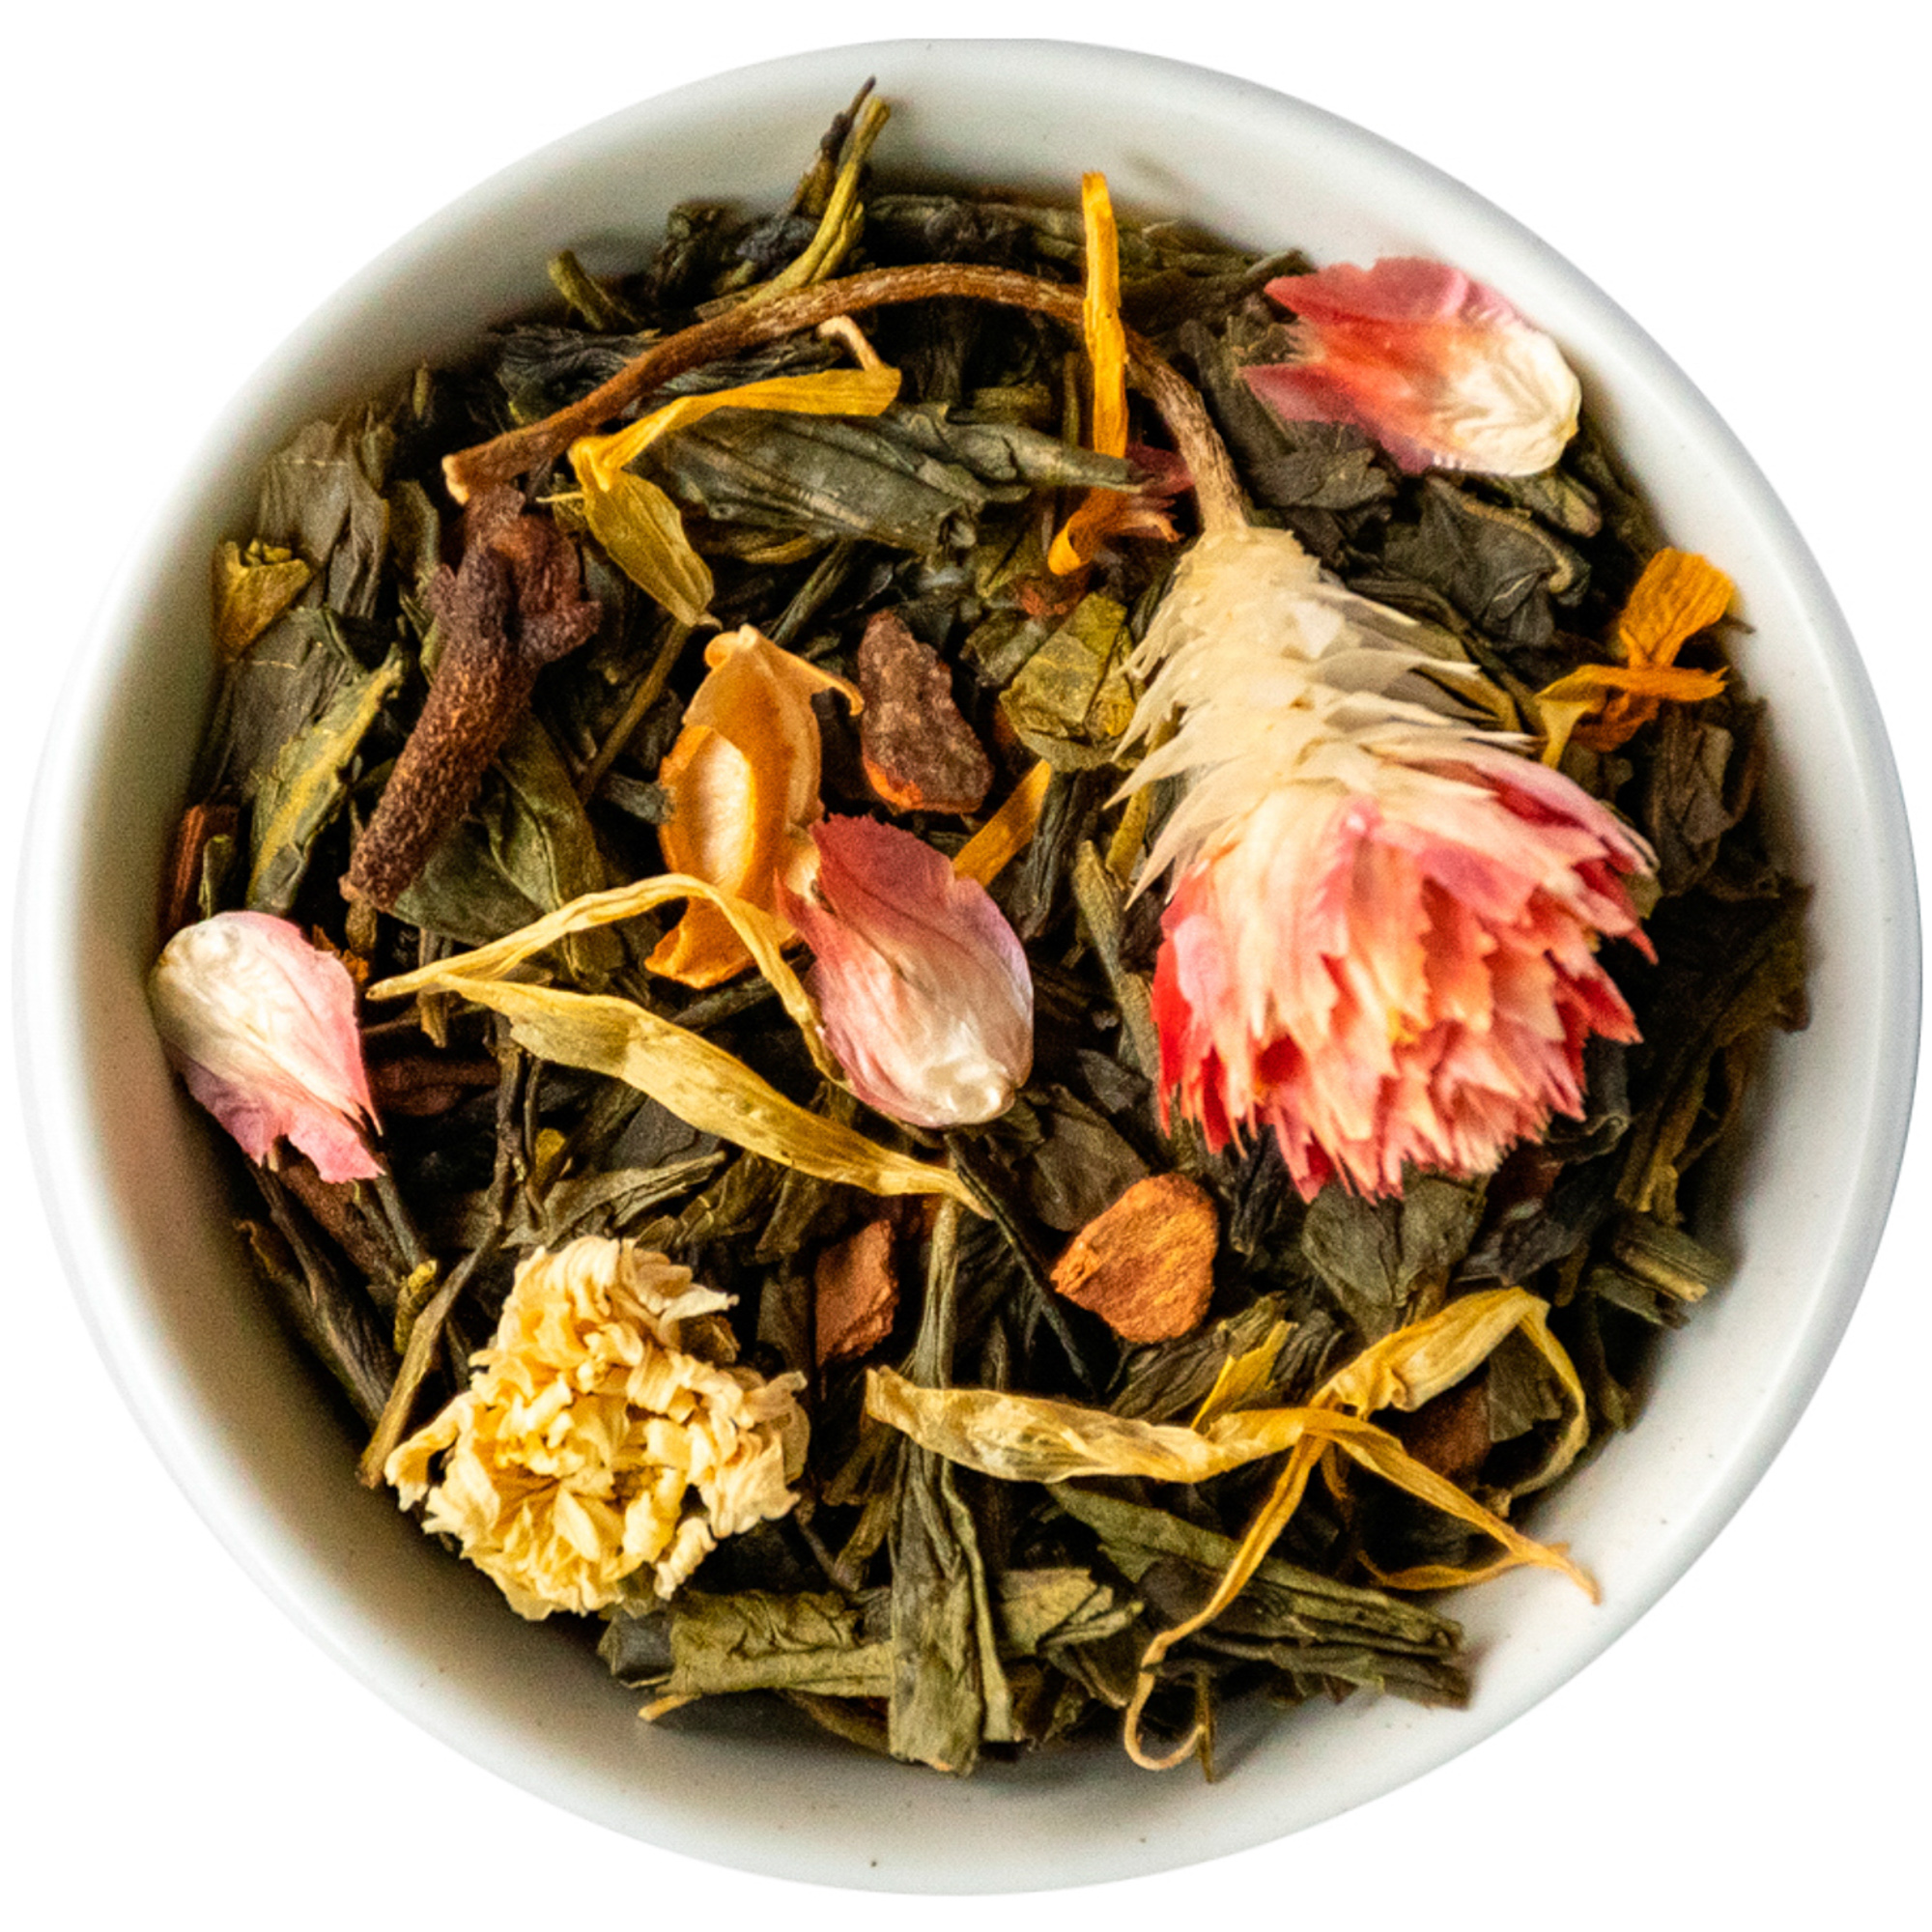 NEW! СЛАДКАЯ ЖИЗНЬ - зеленый чай Сенча с календулой, цветками клевера и хризантемы, гвоздикой, корицой (200 гр.)